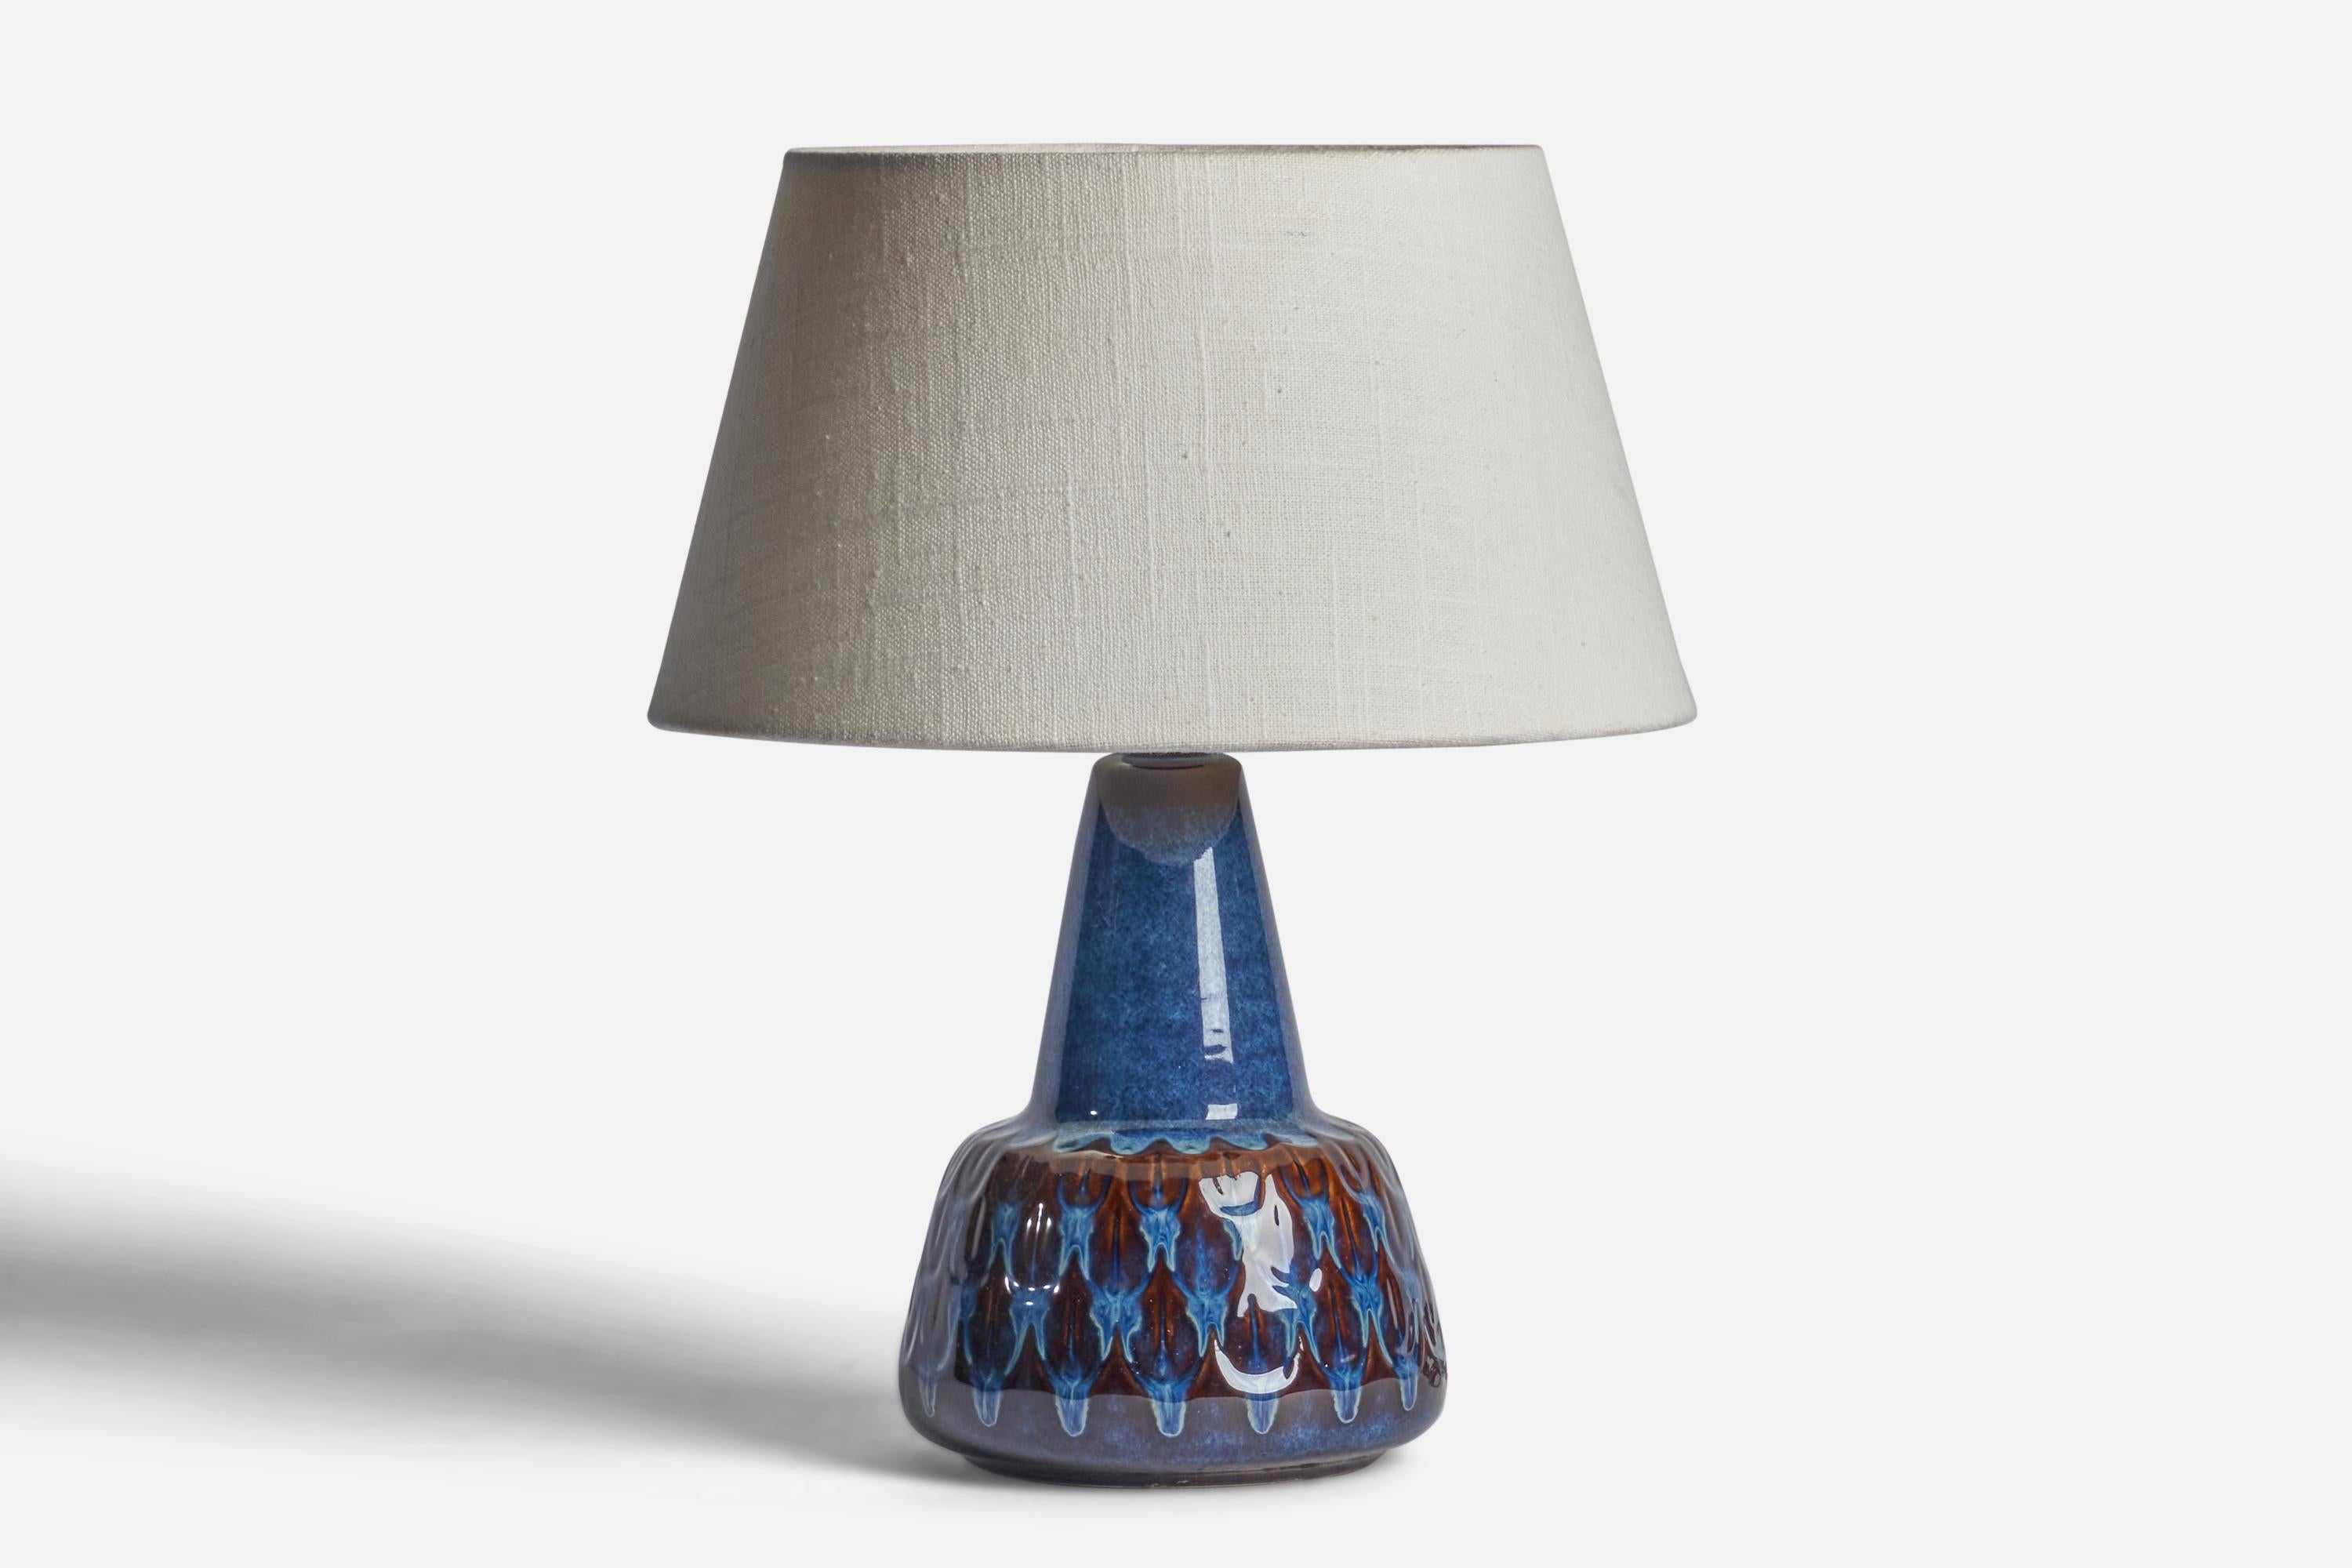 Tischlampe aus blau glasiertem Steingut, entworfen und hergestellt von Søholm, Bornholm, Dänemark, 1960er Jahre.

Abmessungen der Lampe (Zoll): 9,75